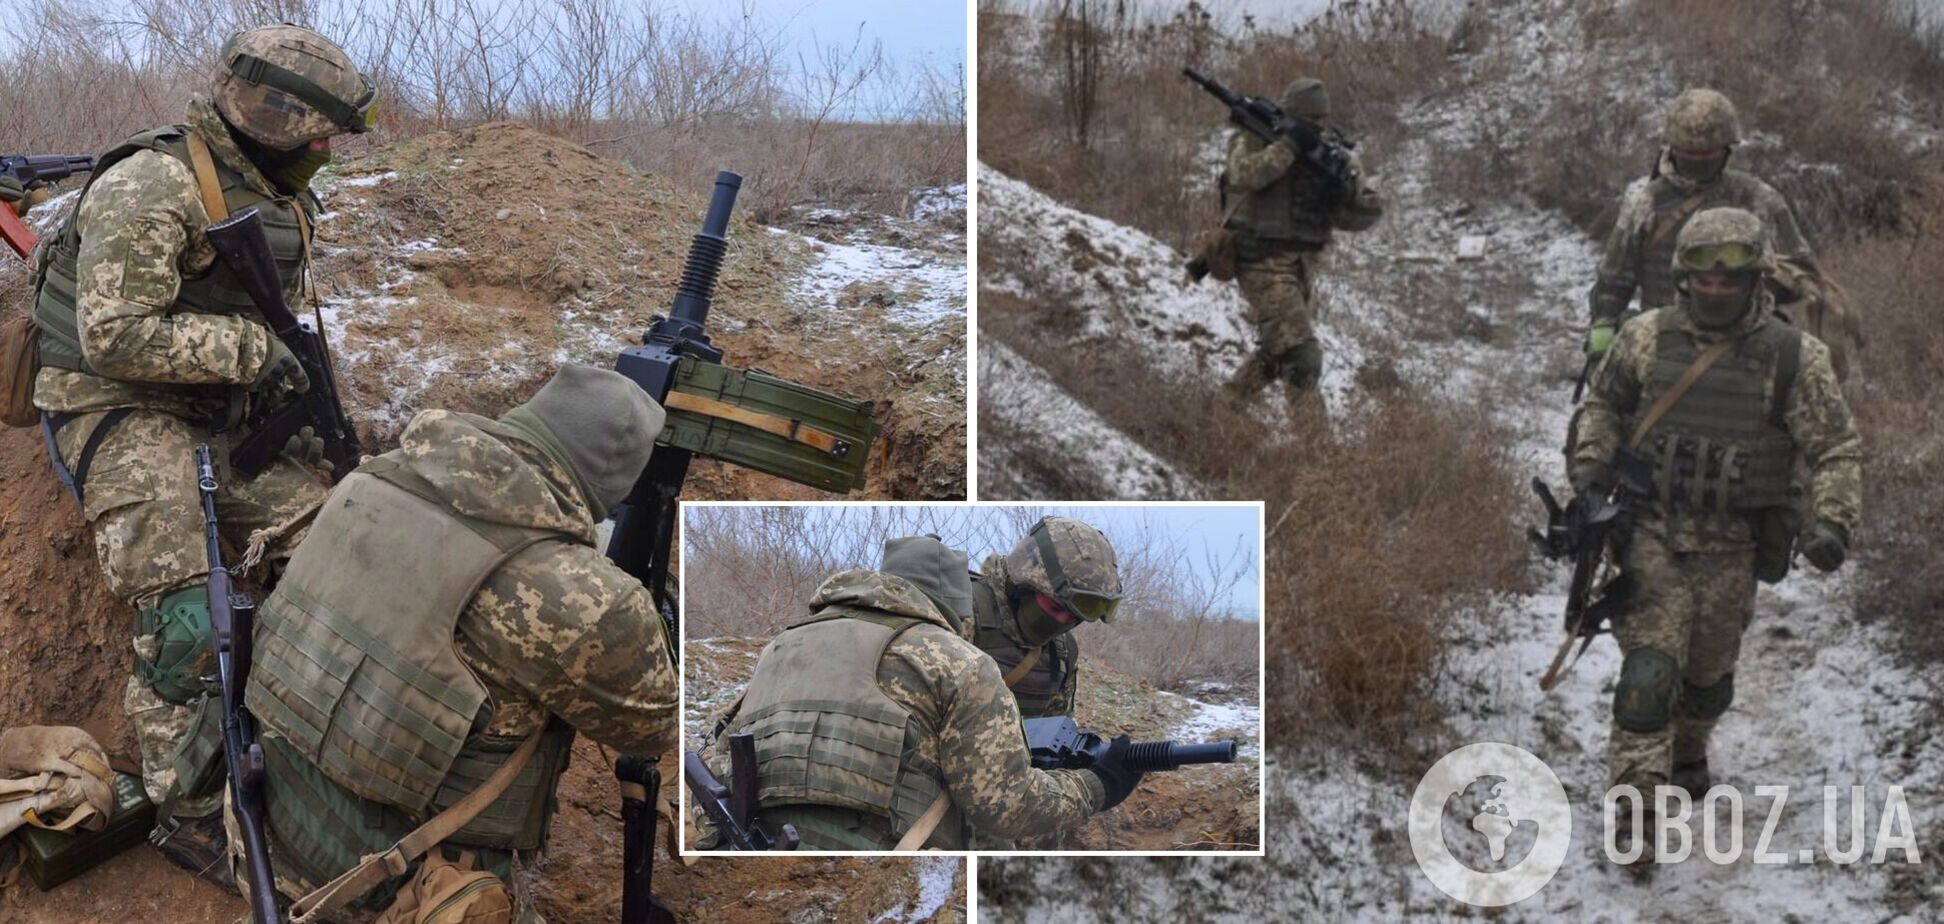 Військові ЗСУ провели бойові стрільби: відпрацьовували гранатометні розрахунки в умовах 'реального бою'. Фото